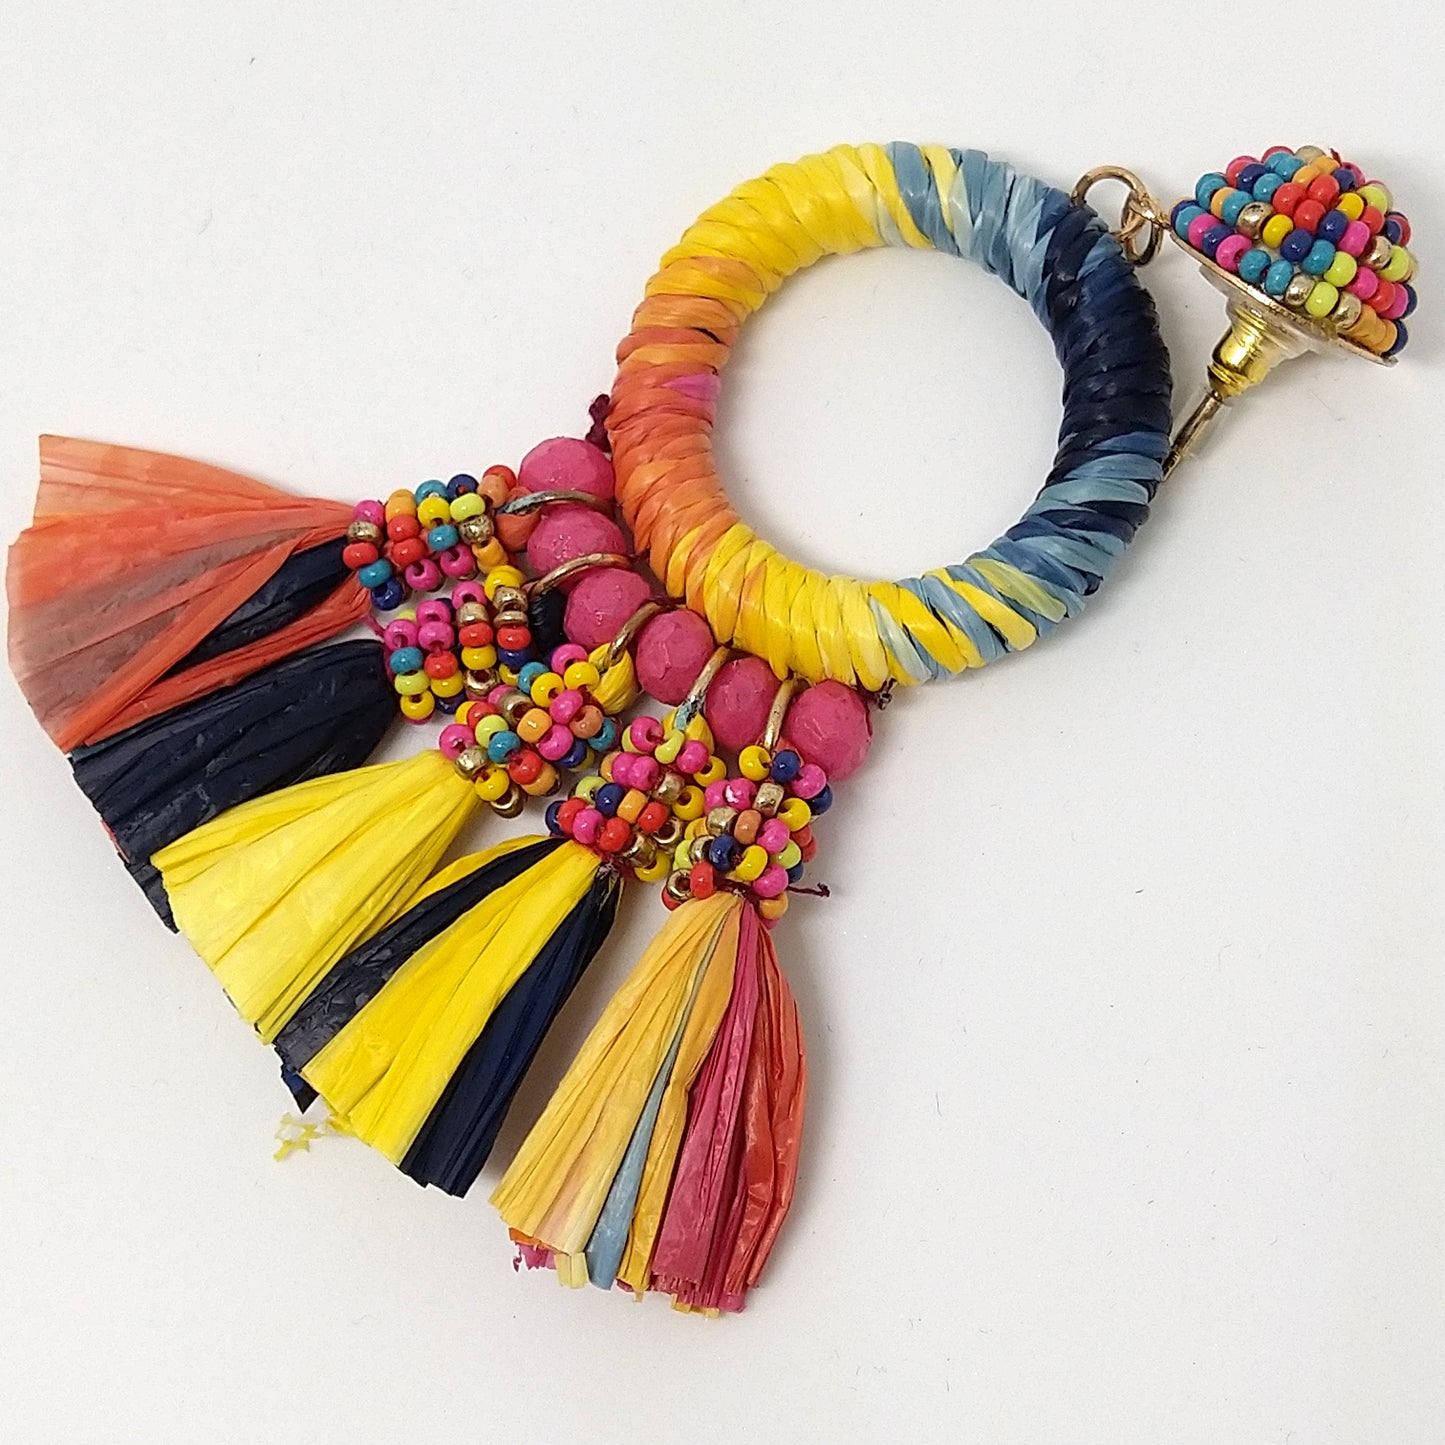 Handmade Multi Color Loop Earrings With Jute Tassel Detailing